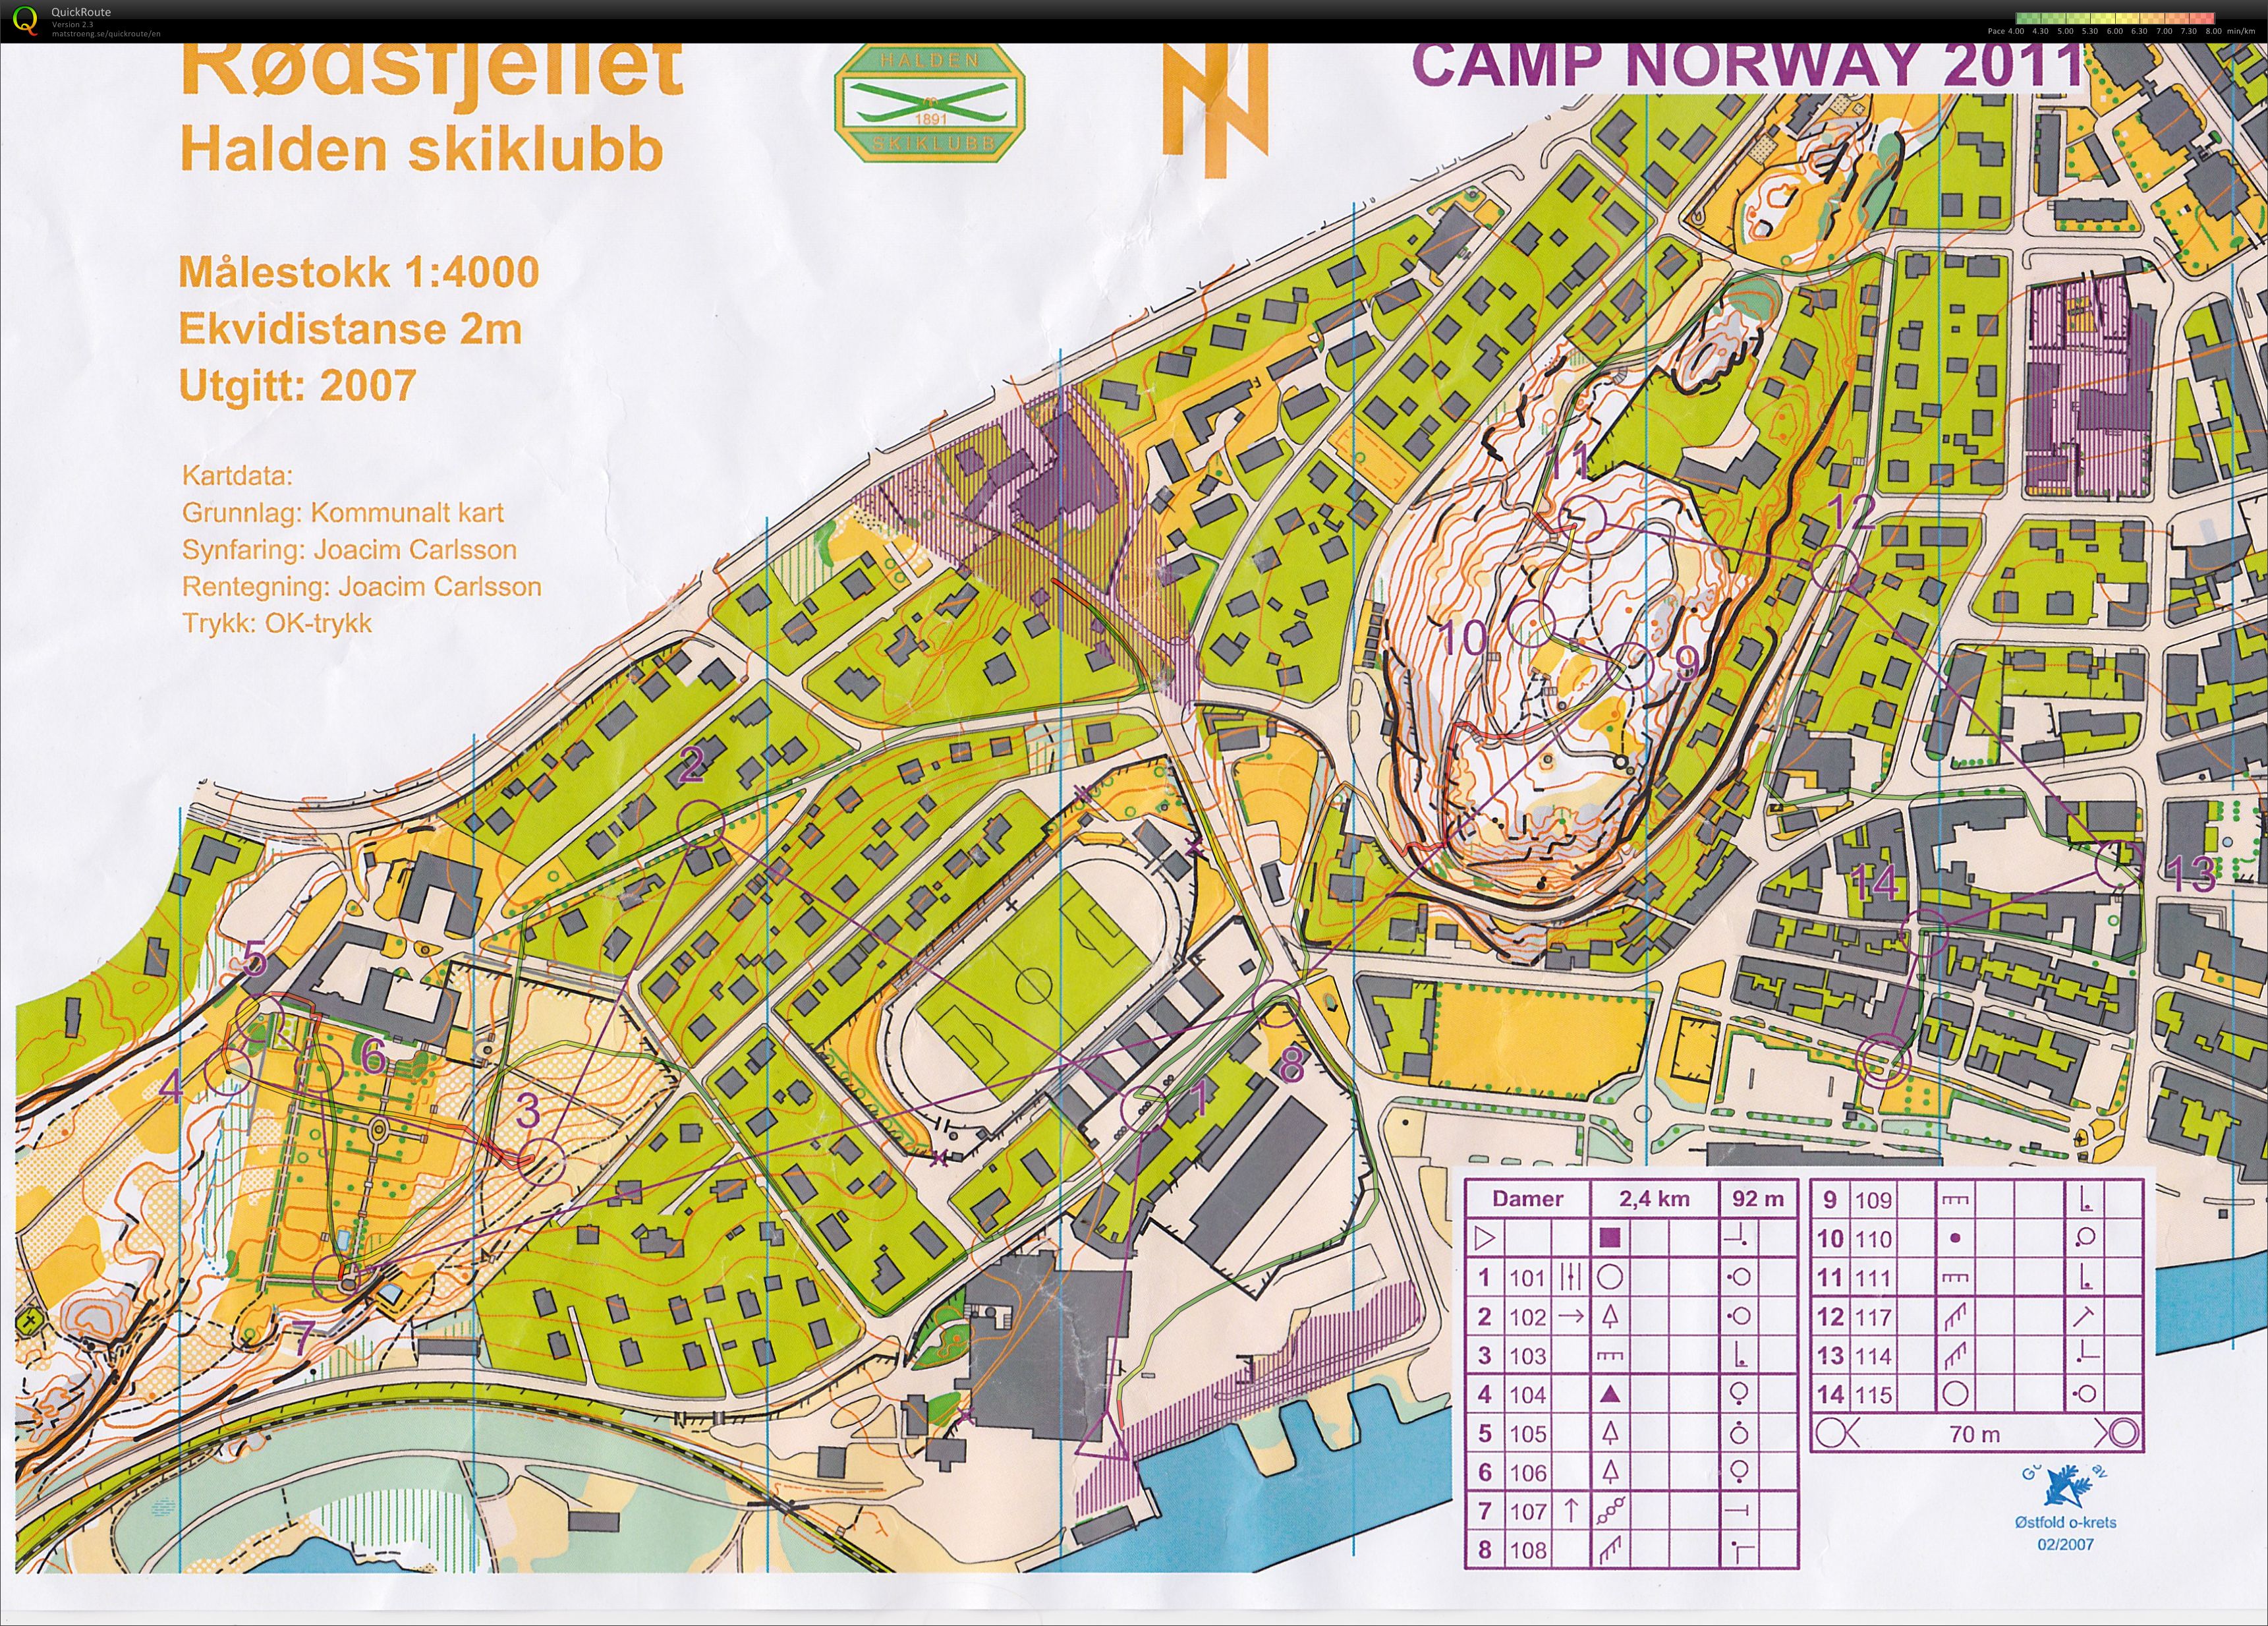 Camp Norway Halden økt 1, sprint (03-11-2011)